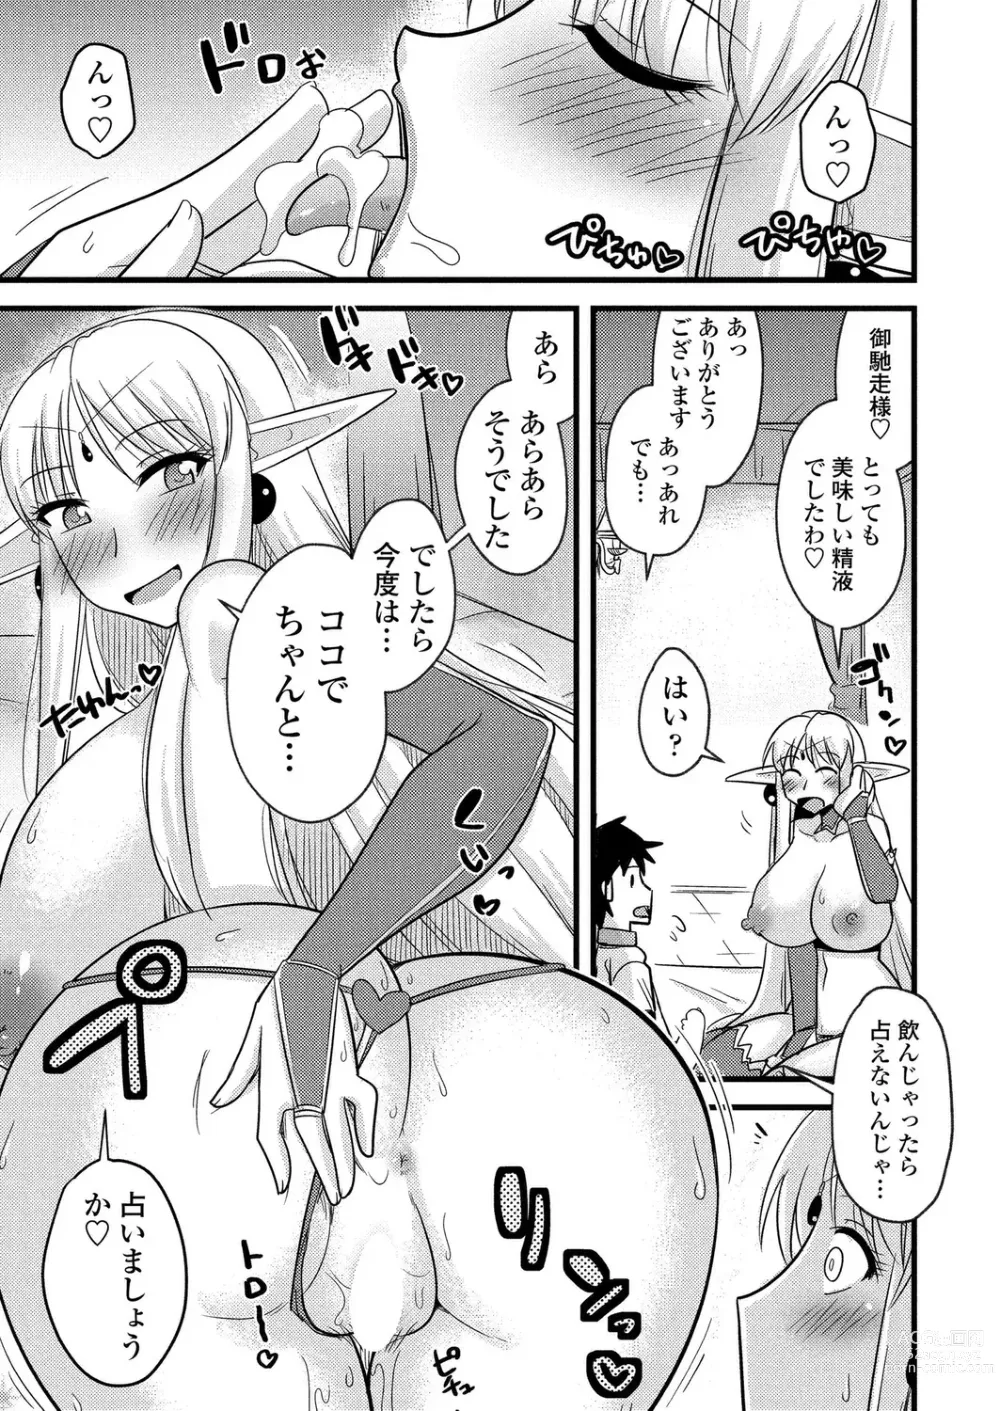 Page 186 of manga BugBug 2023-08